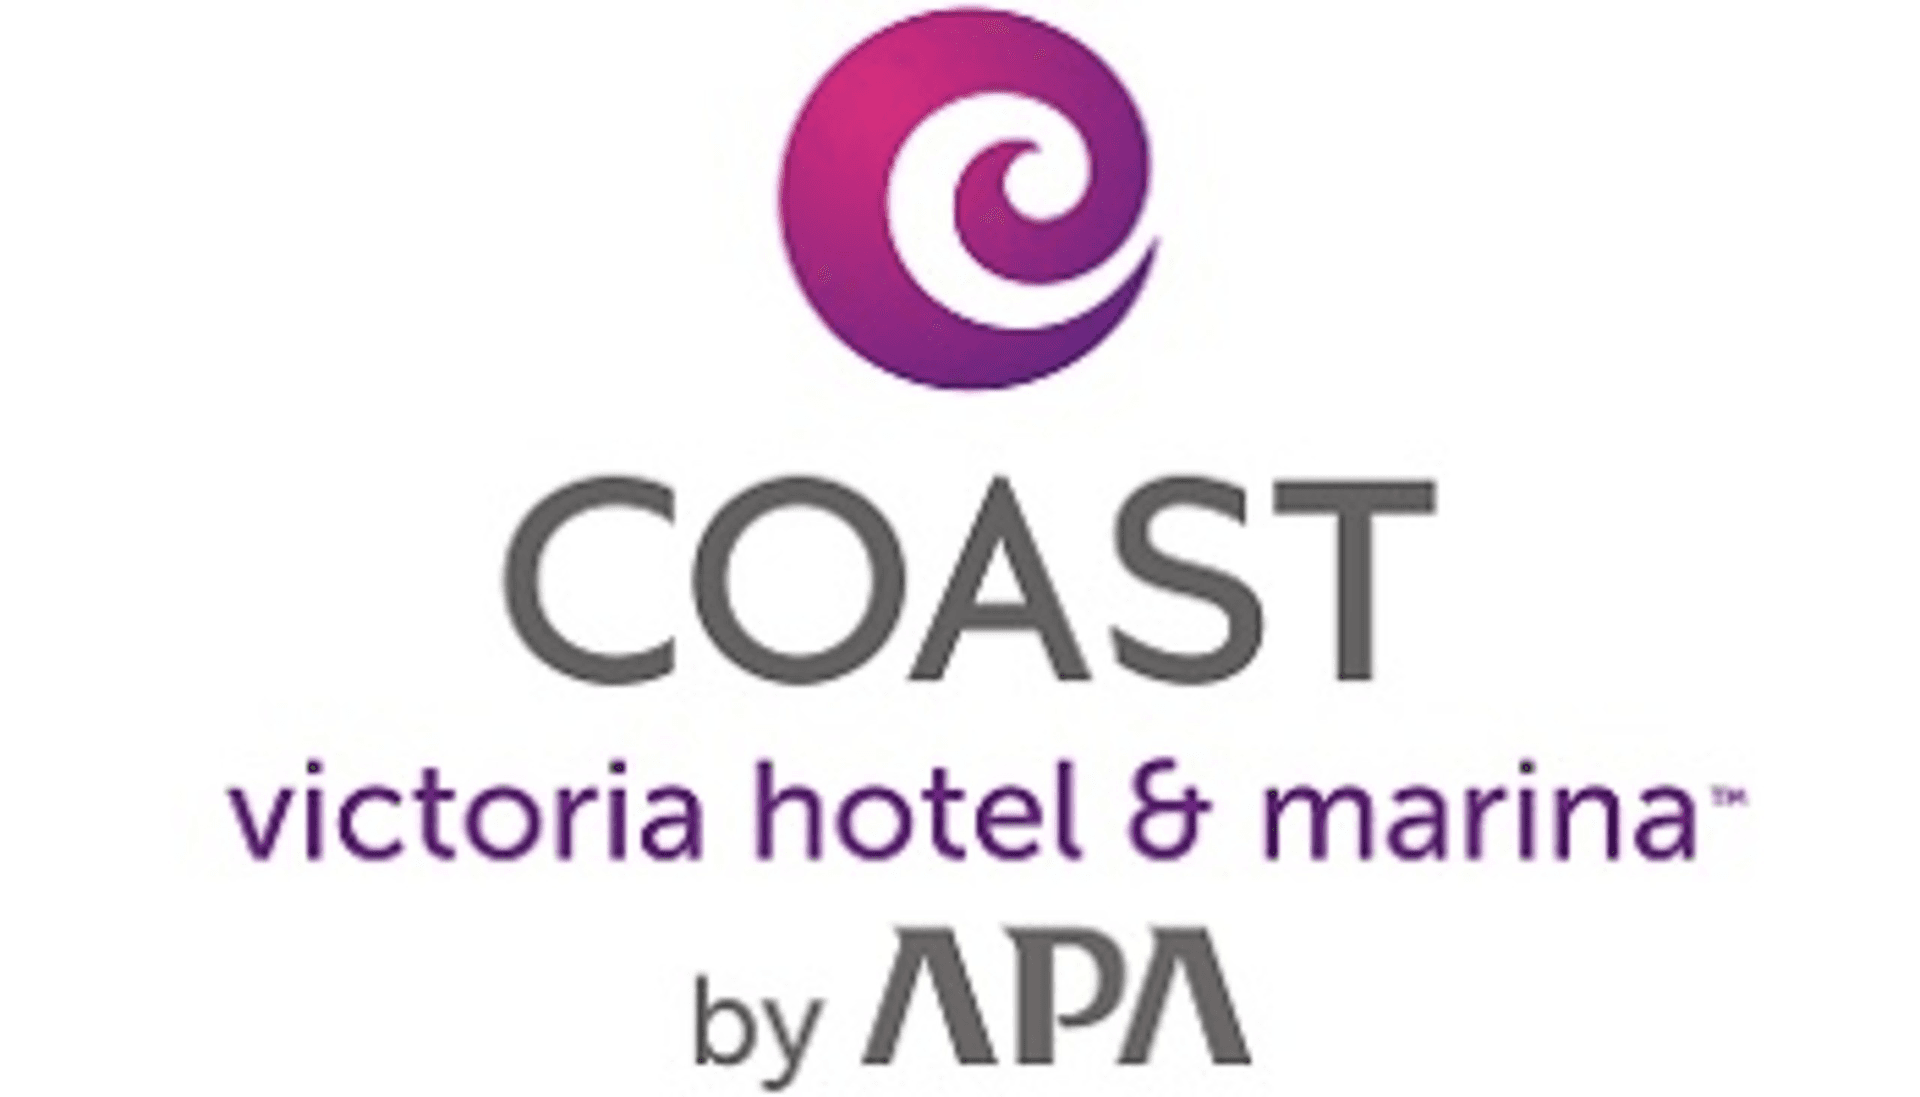 coast victoria hotel marina logo